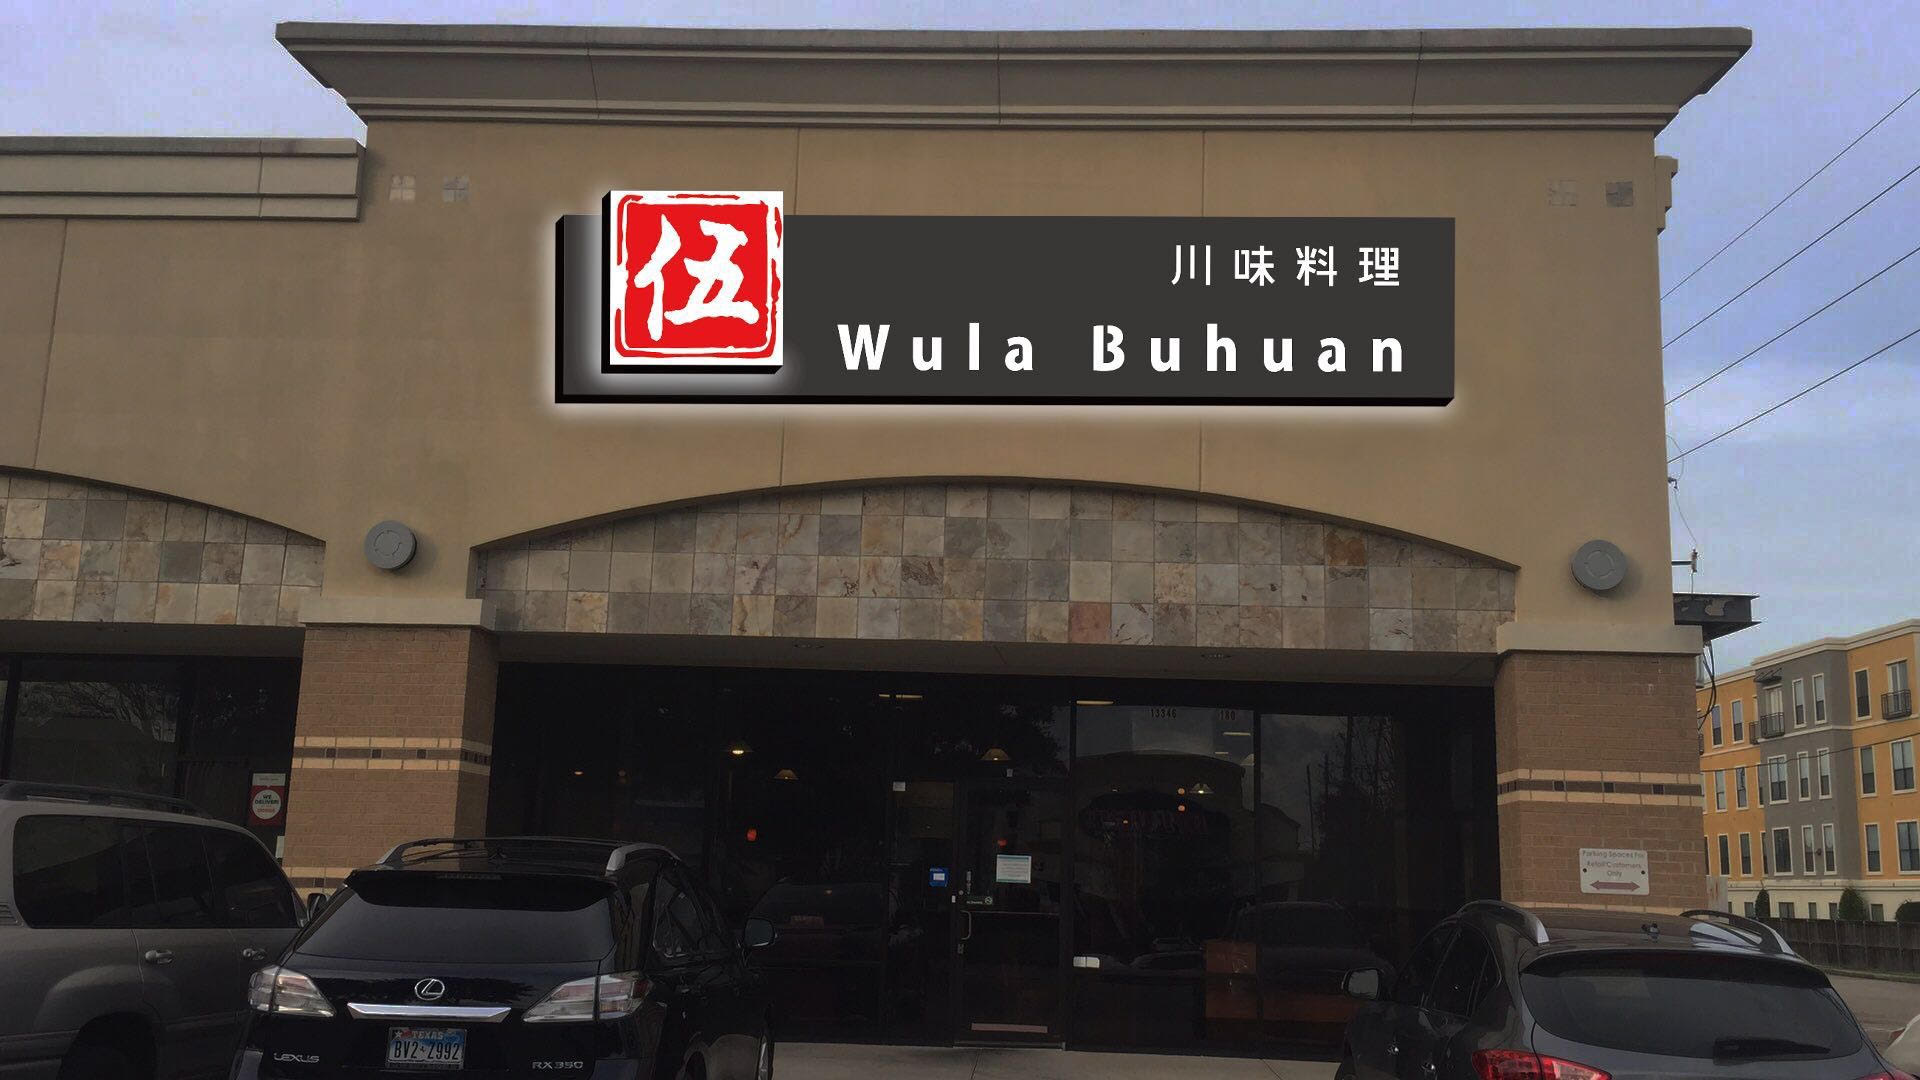 Wula Buhuan